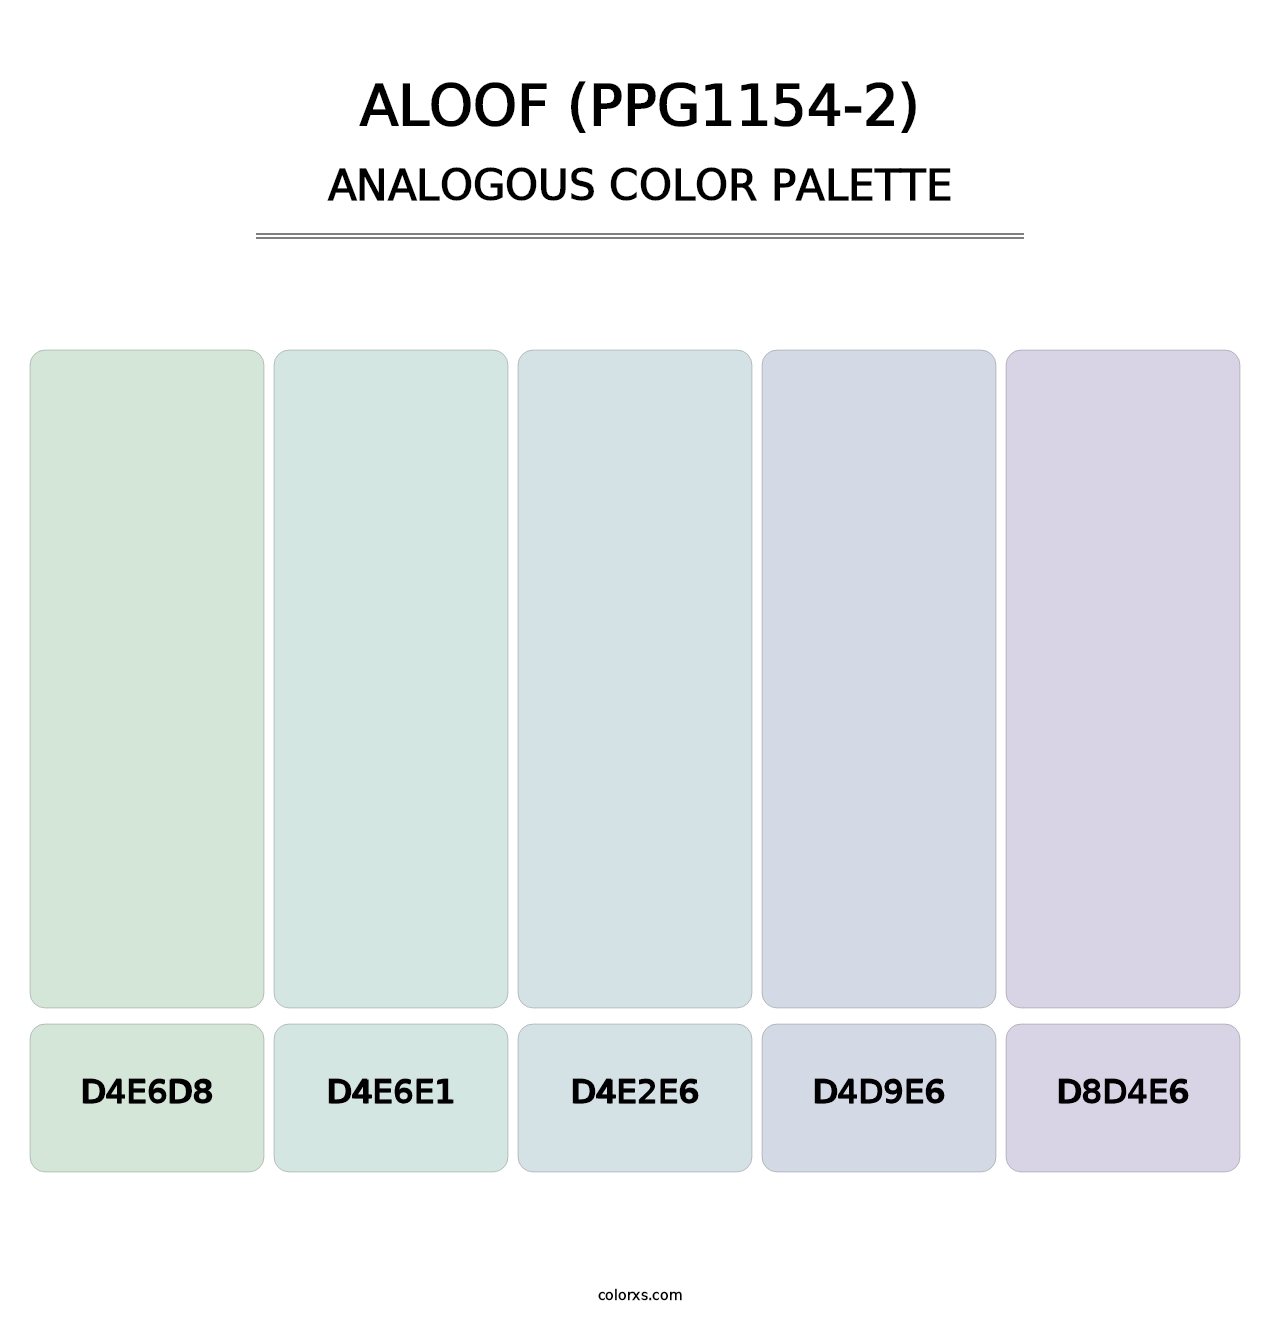 Aloof (PPG1154-2) - Analogous Color Palette